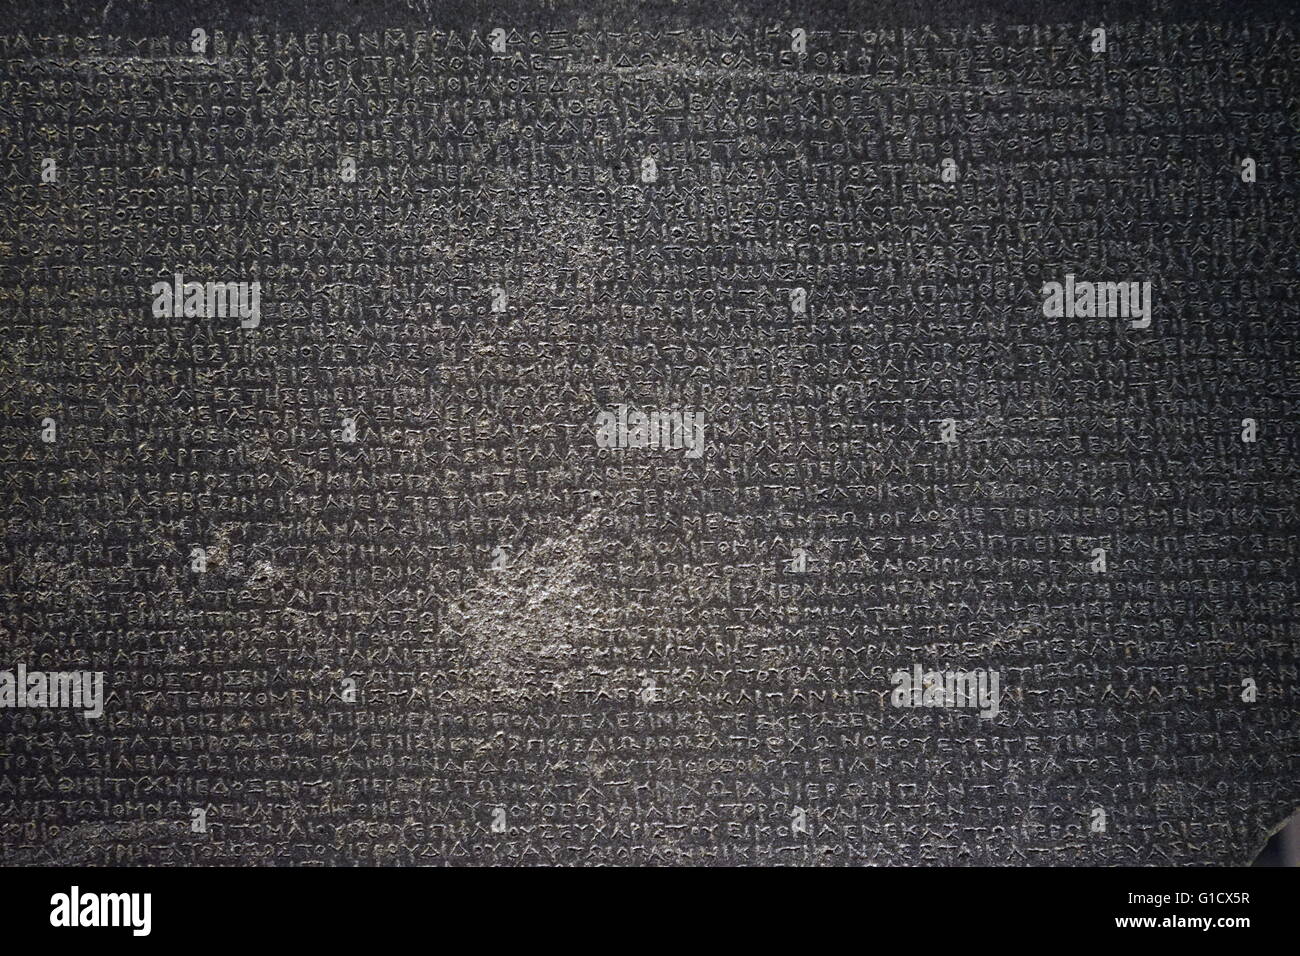 Die alte Rosetta Stone, ein Granodiorit Stele mit einem Erlass in Memphis eingeschrieben. Vom 2. Jahrhundert v. Chr. Stockfoto